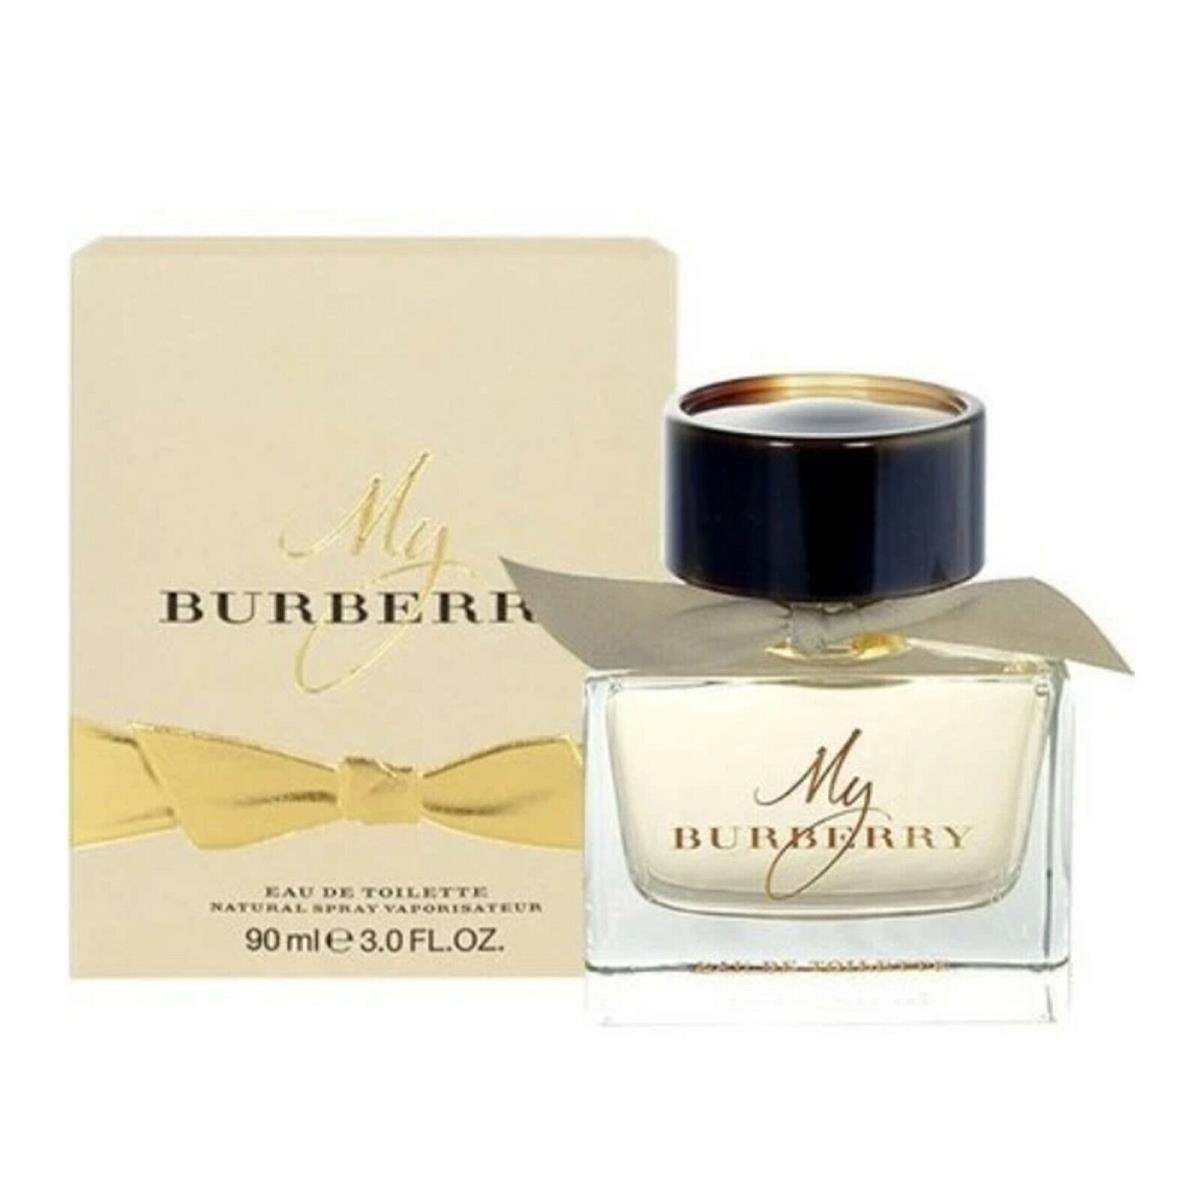 My Burberry Perfume For Women by Burberry 3.0 oz / 90 ml Edt Spray